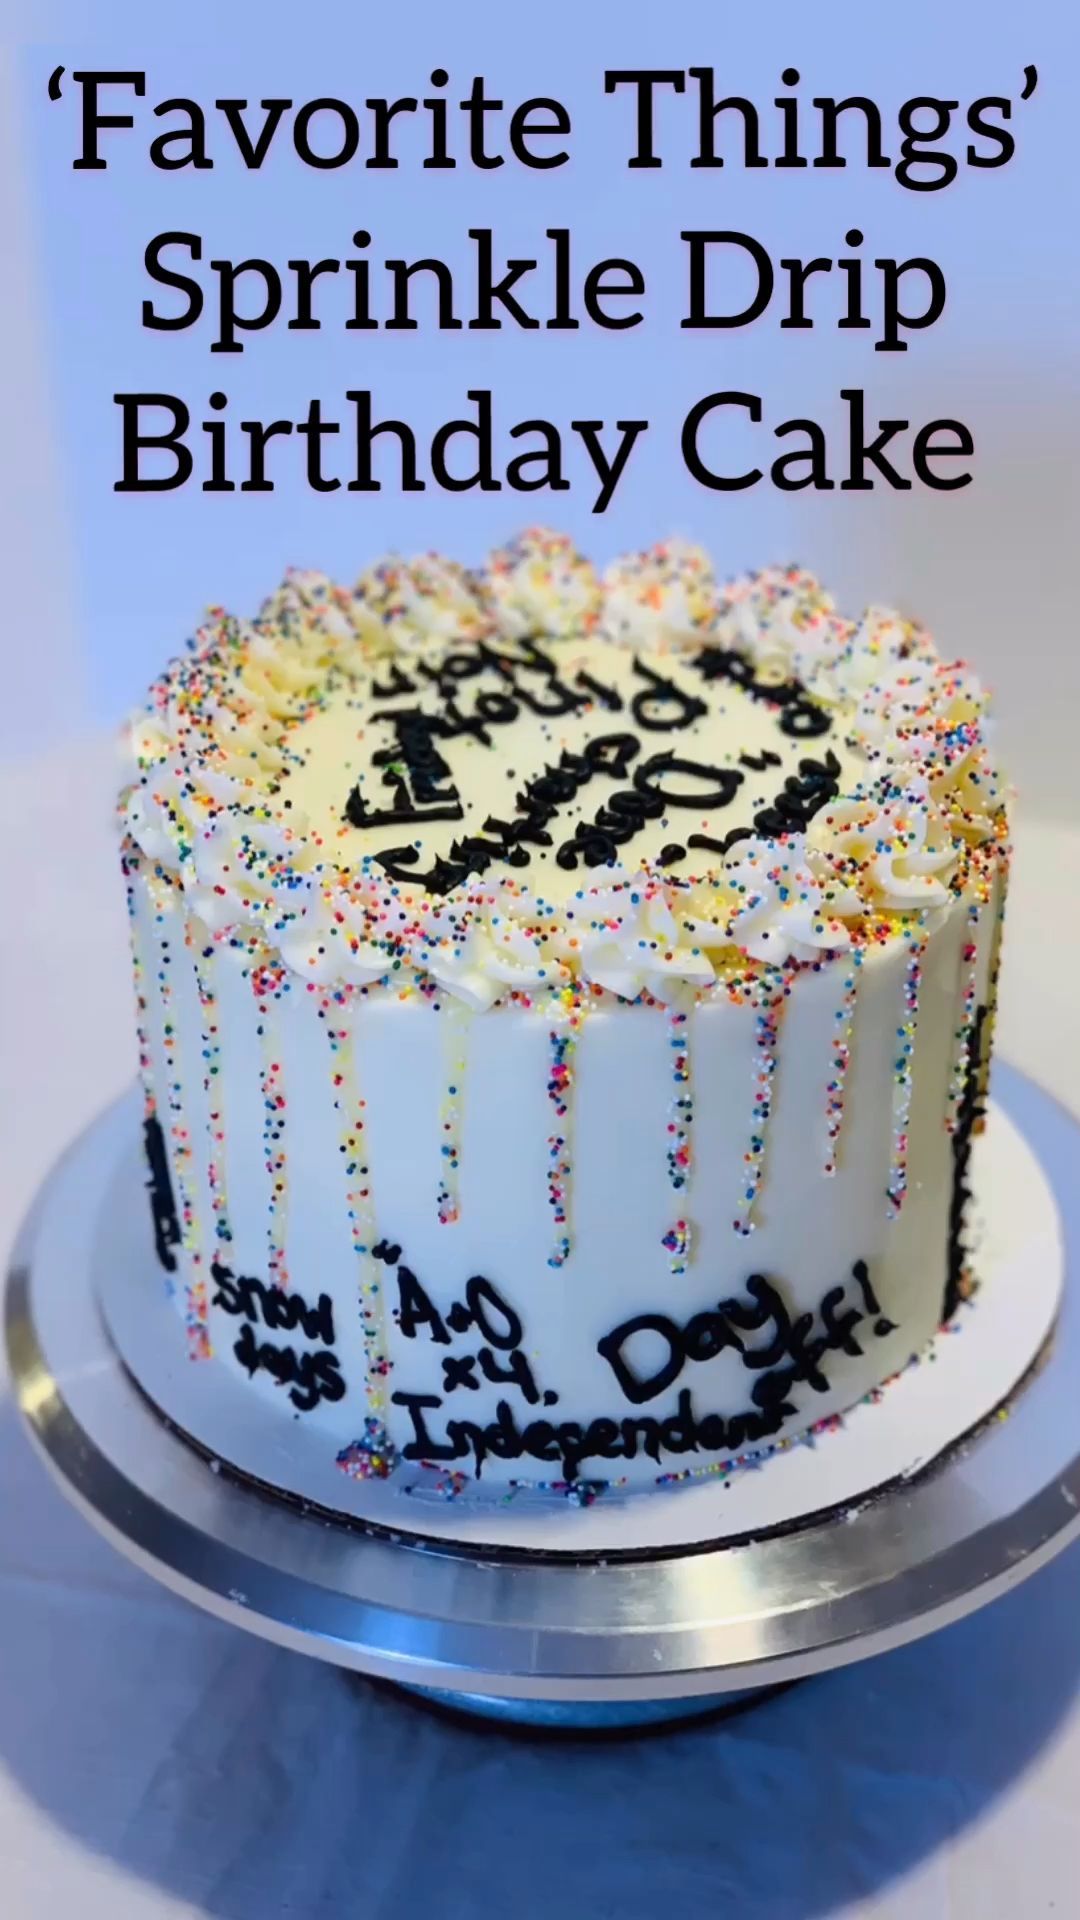 Favorite Things Sprinkle Drip Birthday Cake -   18 rainbow cake Videos ideas